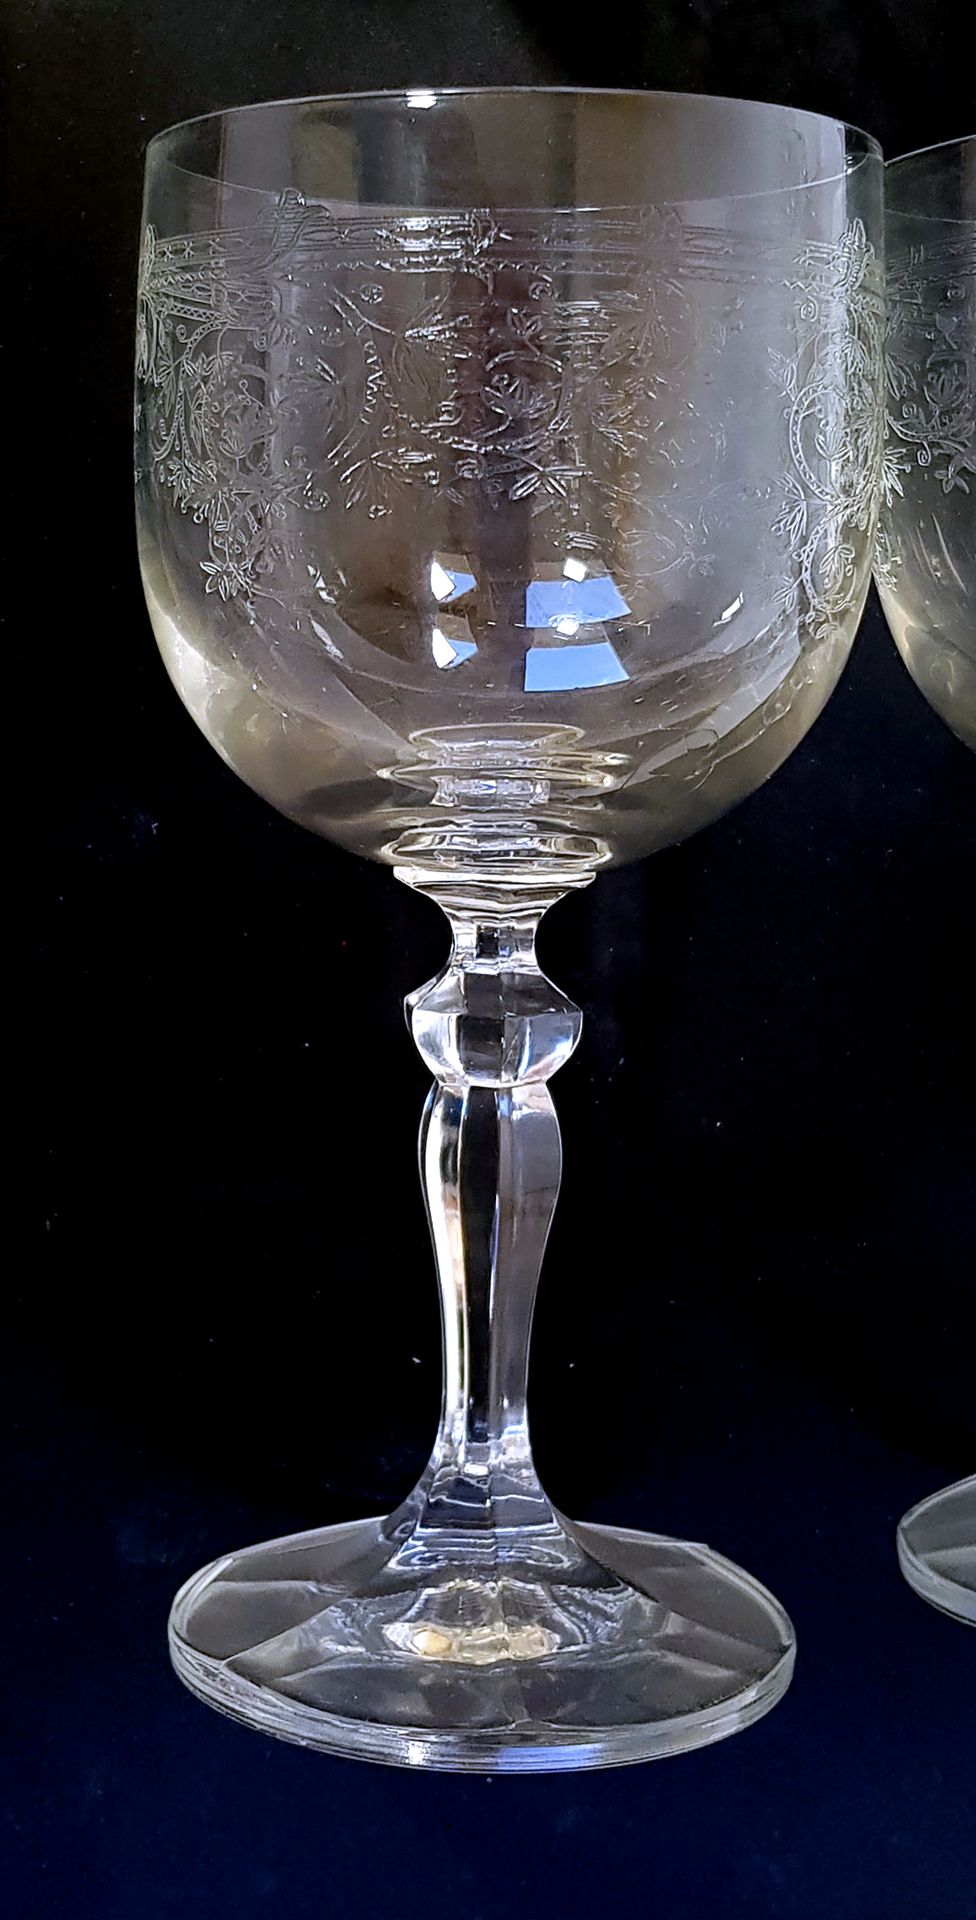 Null 带叶子装饰的水晶玻璃器皿套装，包括五个水杯和六个酒杯

H.15,5和15厘米

包括8个带藤枝装饰的玻璃基尔杯